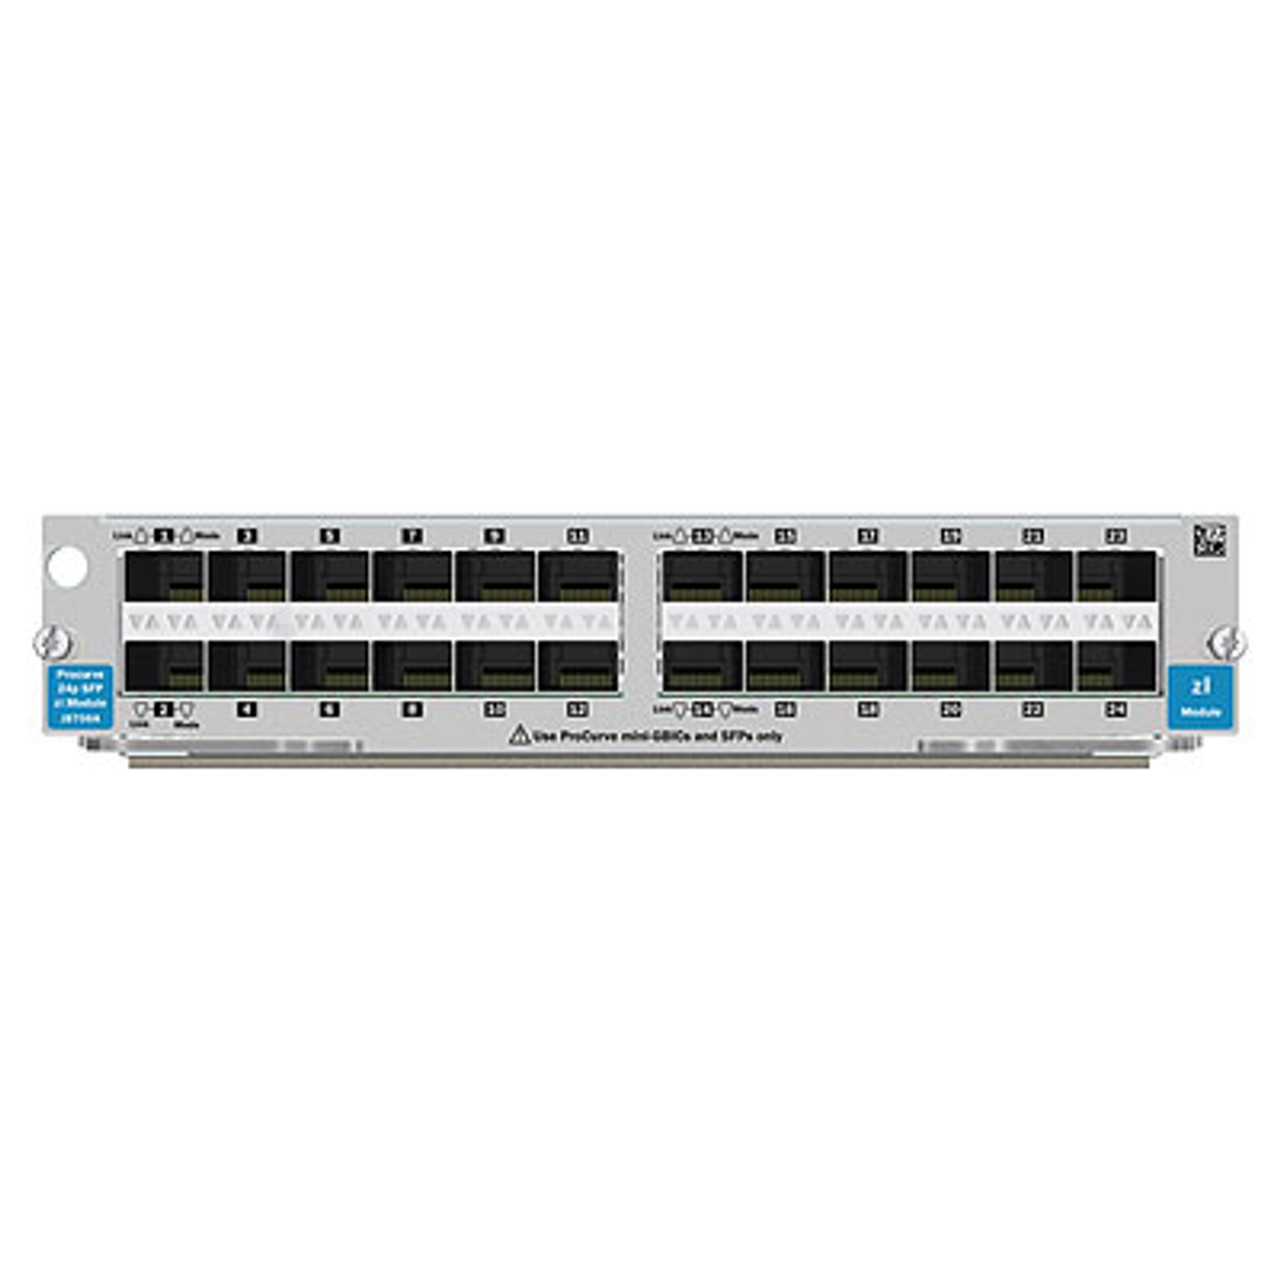 HP ProCurve 24 Port SFP Switch Module (J8706A)